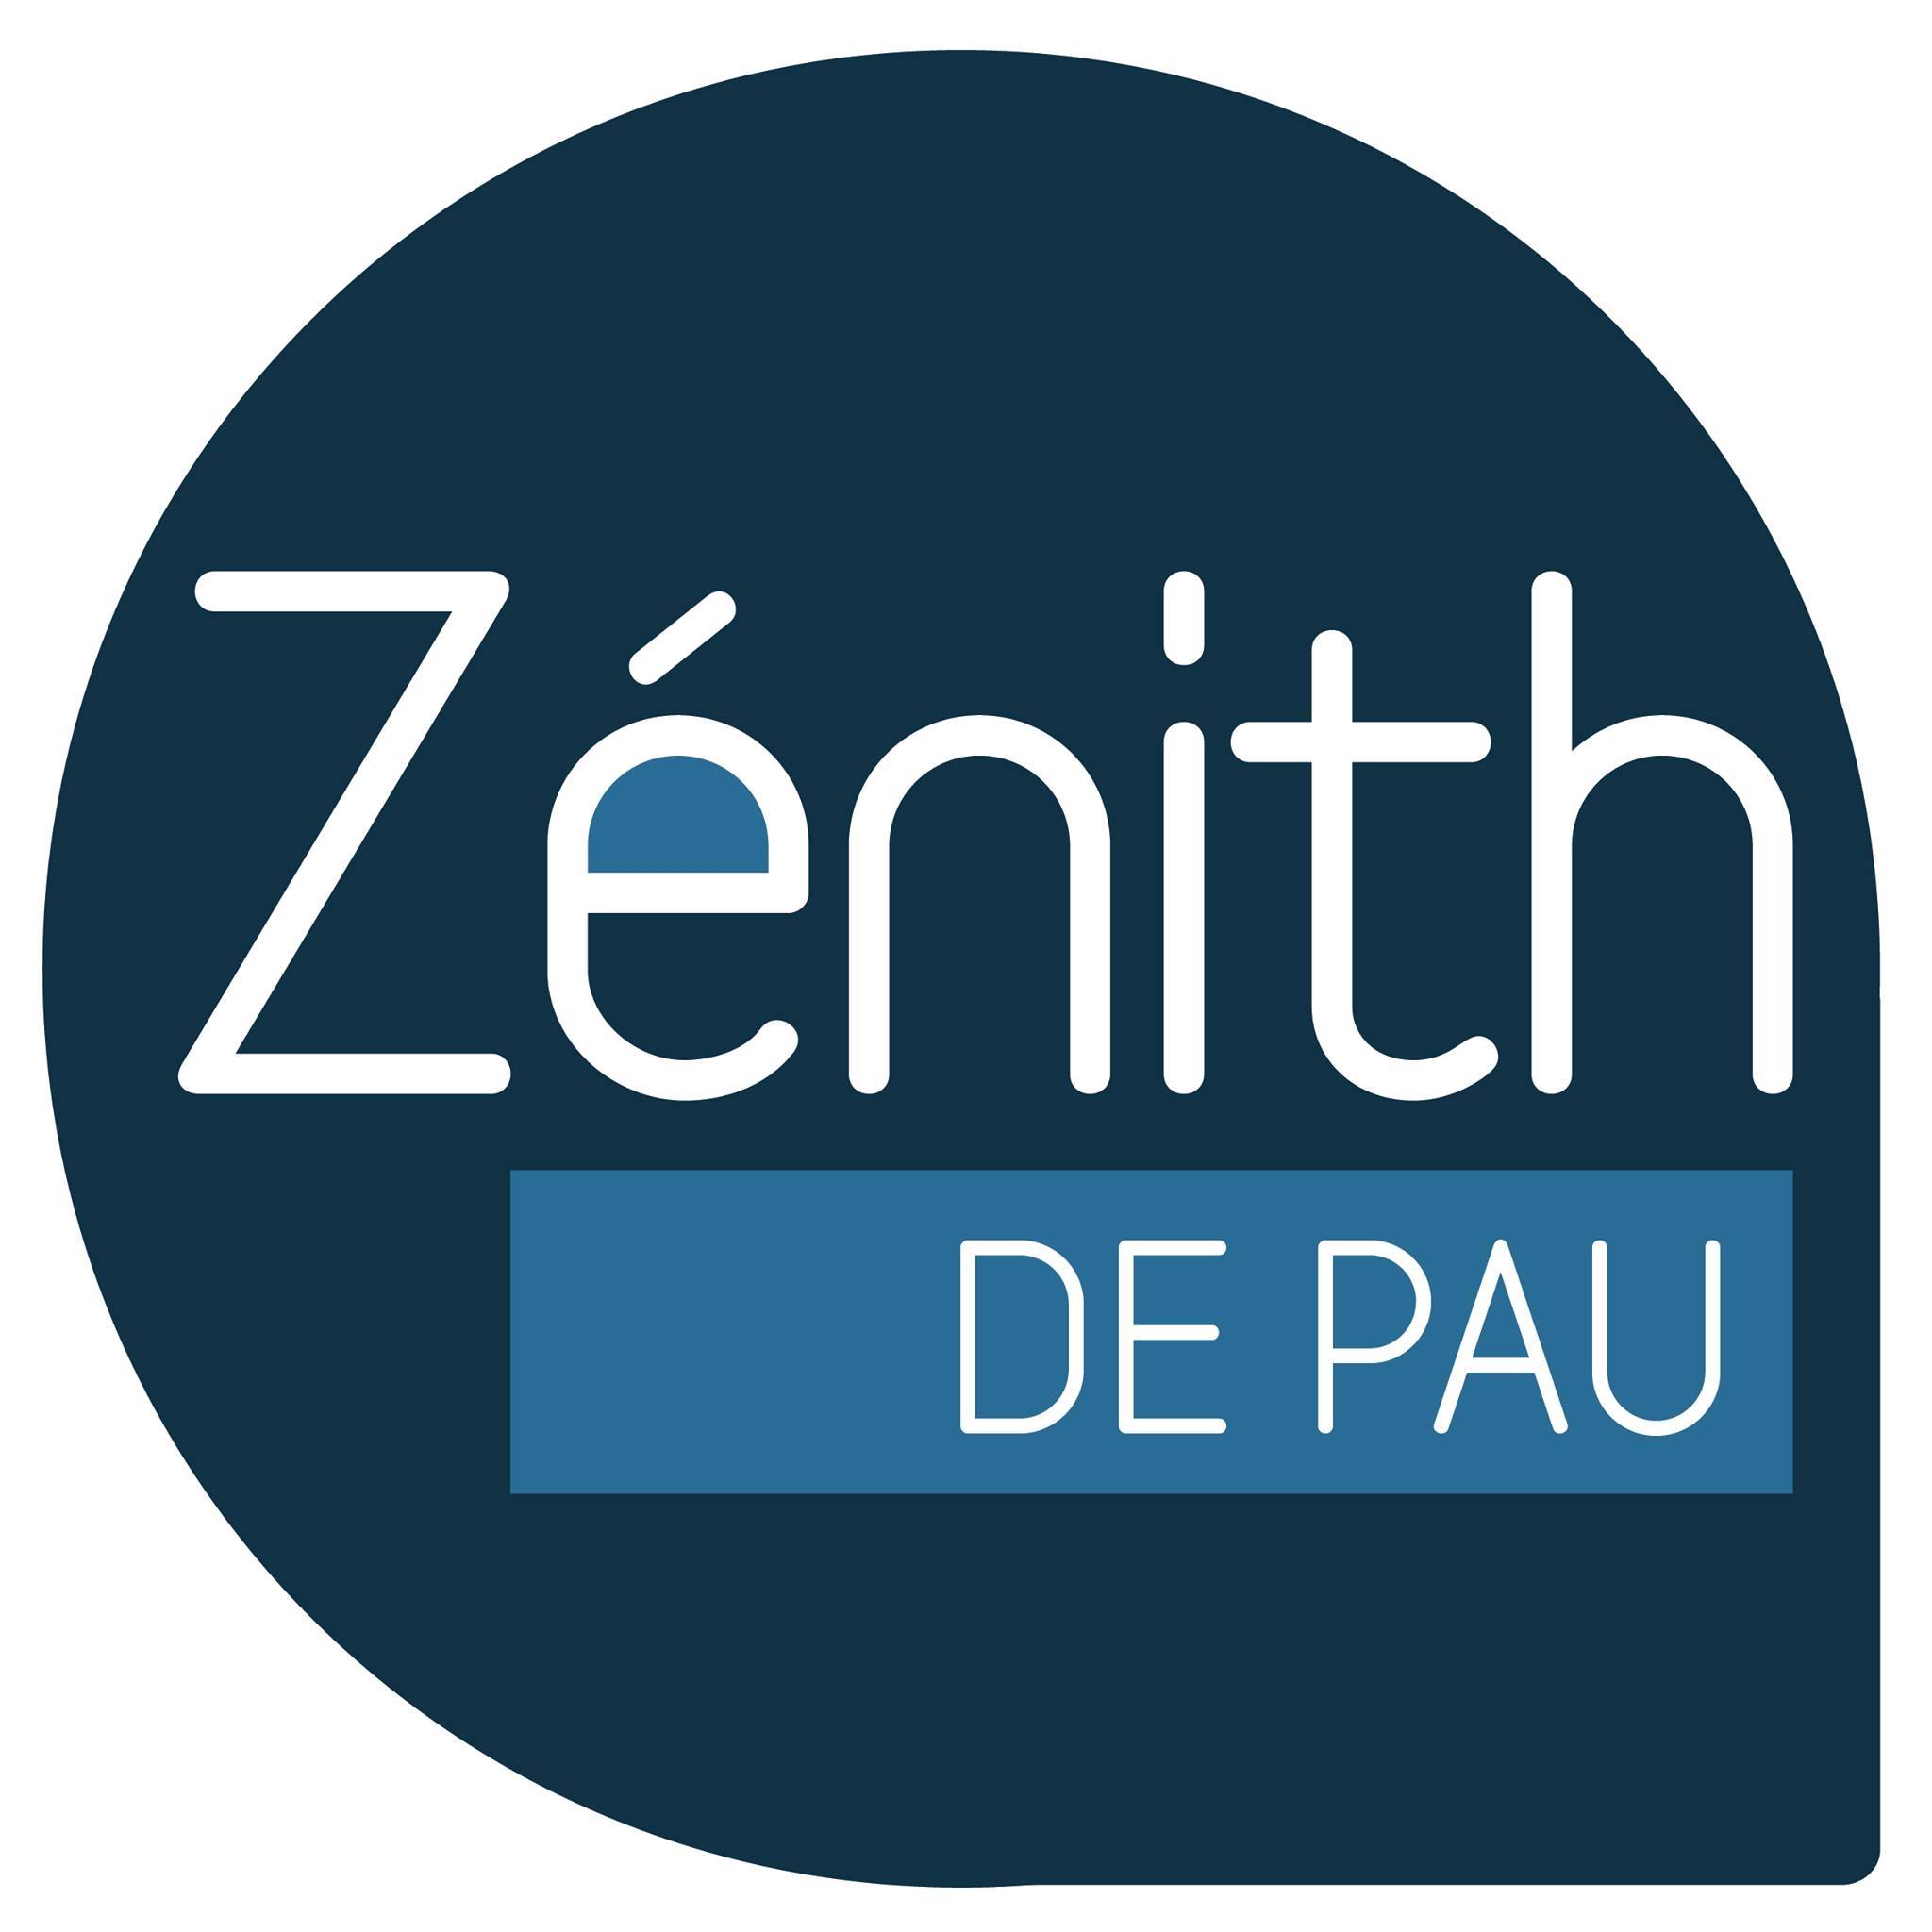 zenith logo.jpg (100 KB)